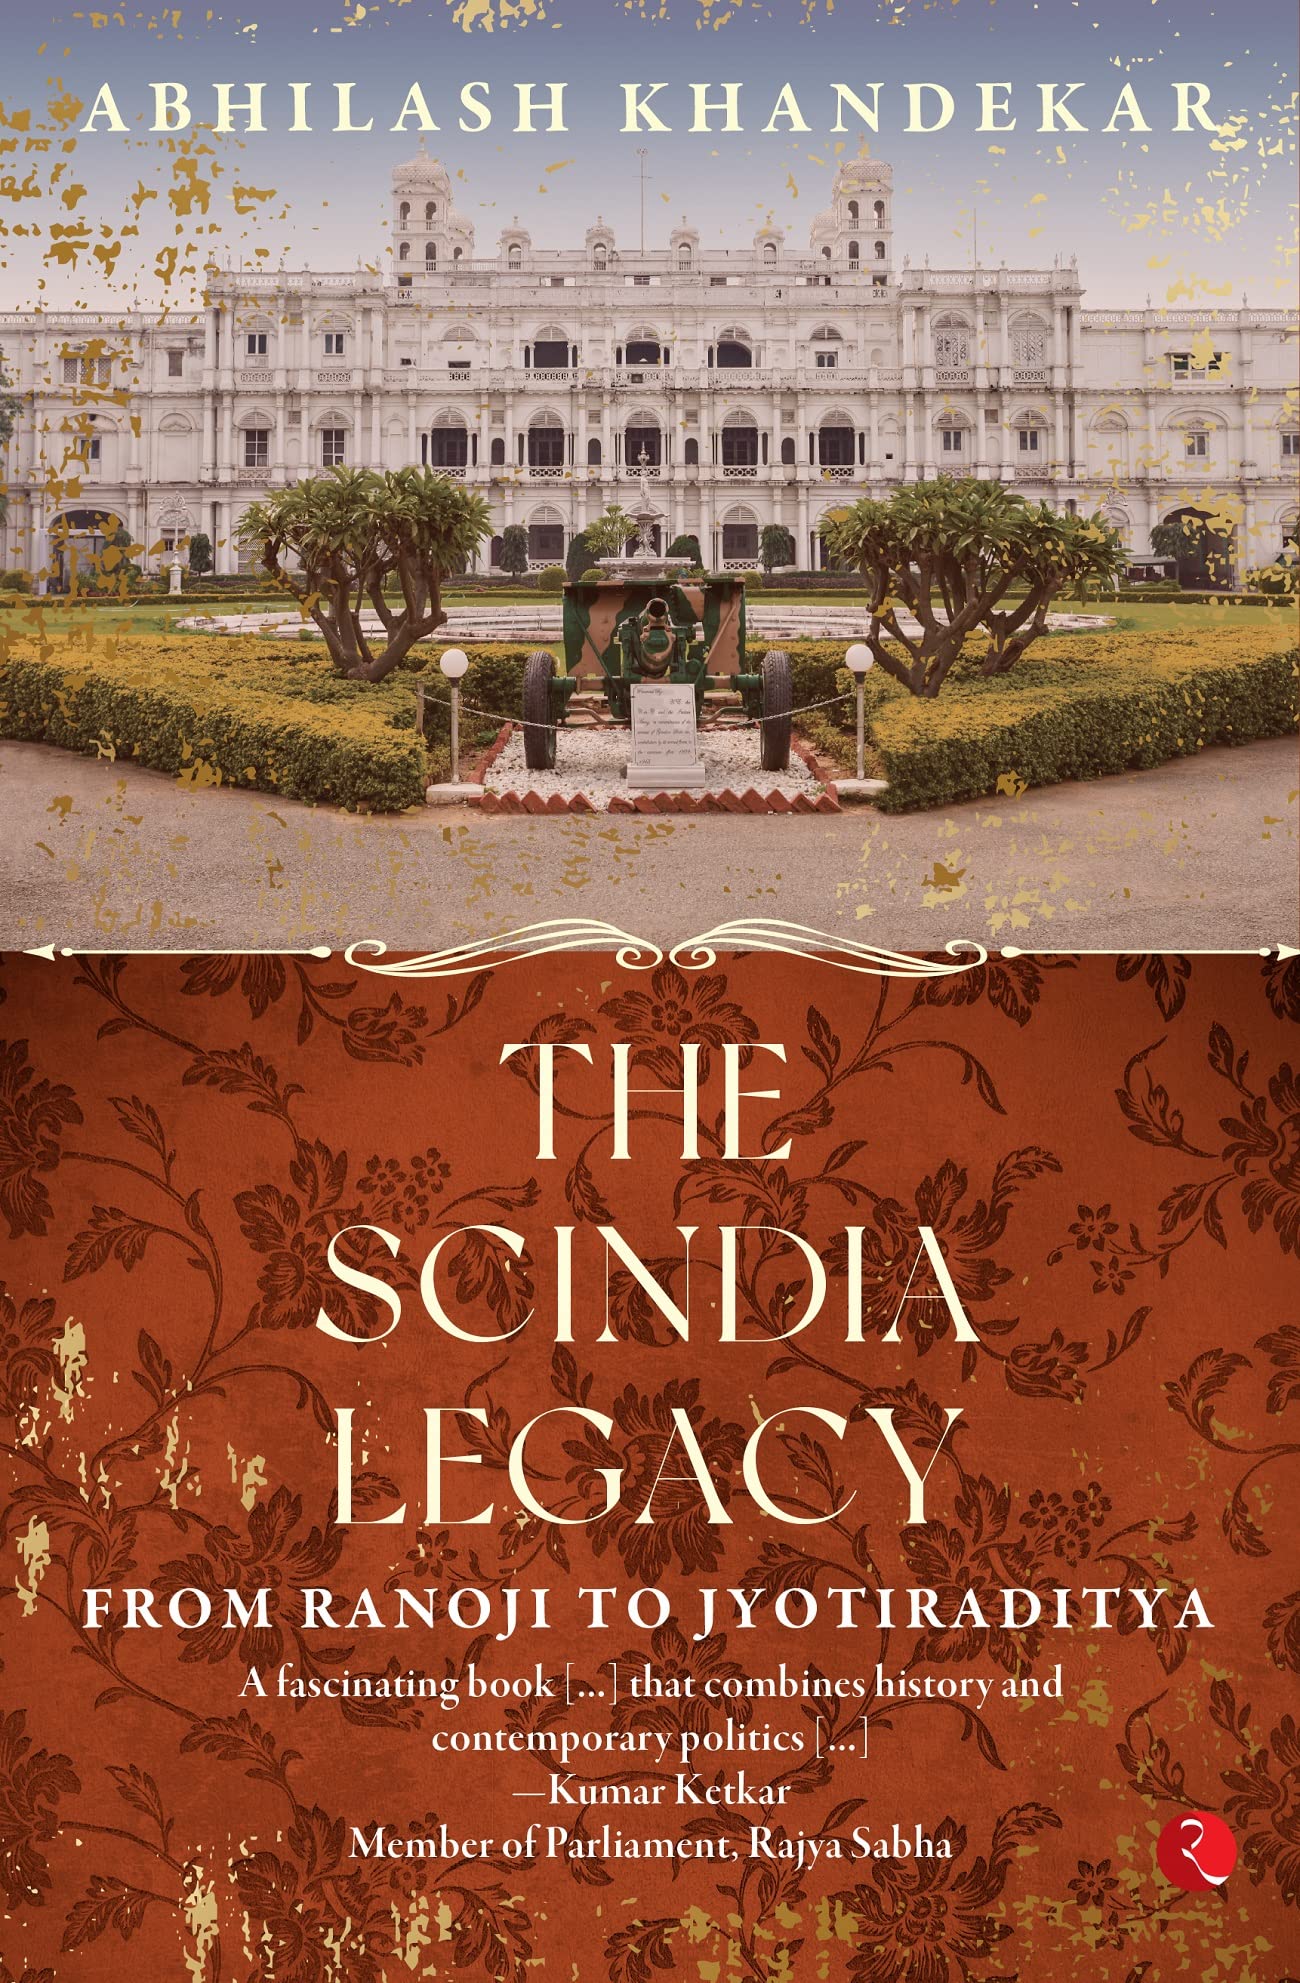 The Scindia Legacy: From Ranoji To Jyotiraditya